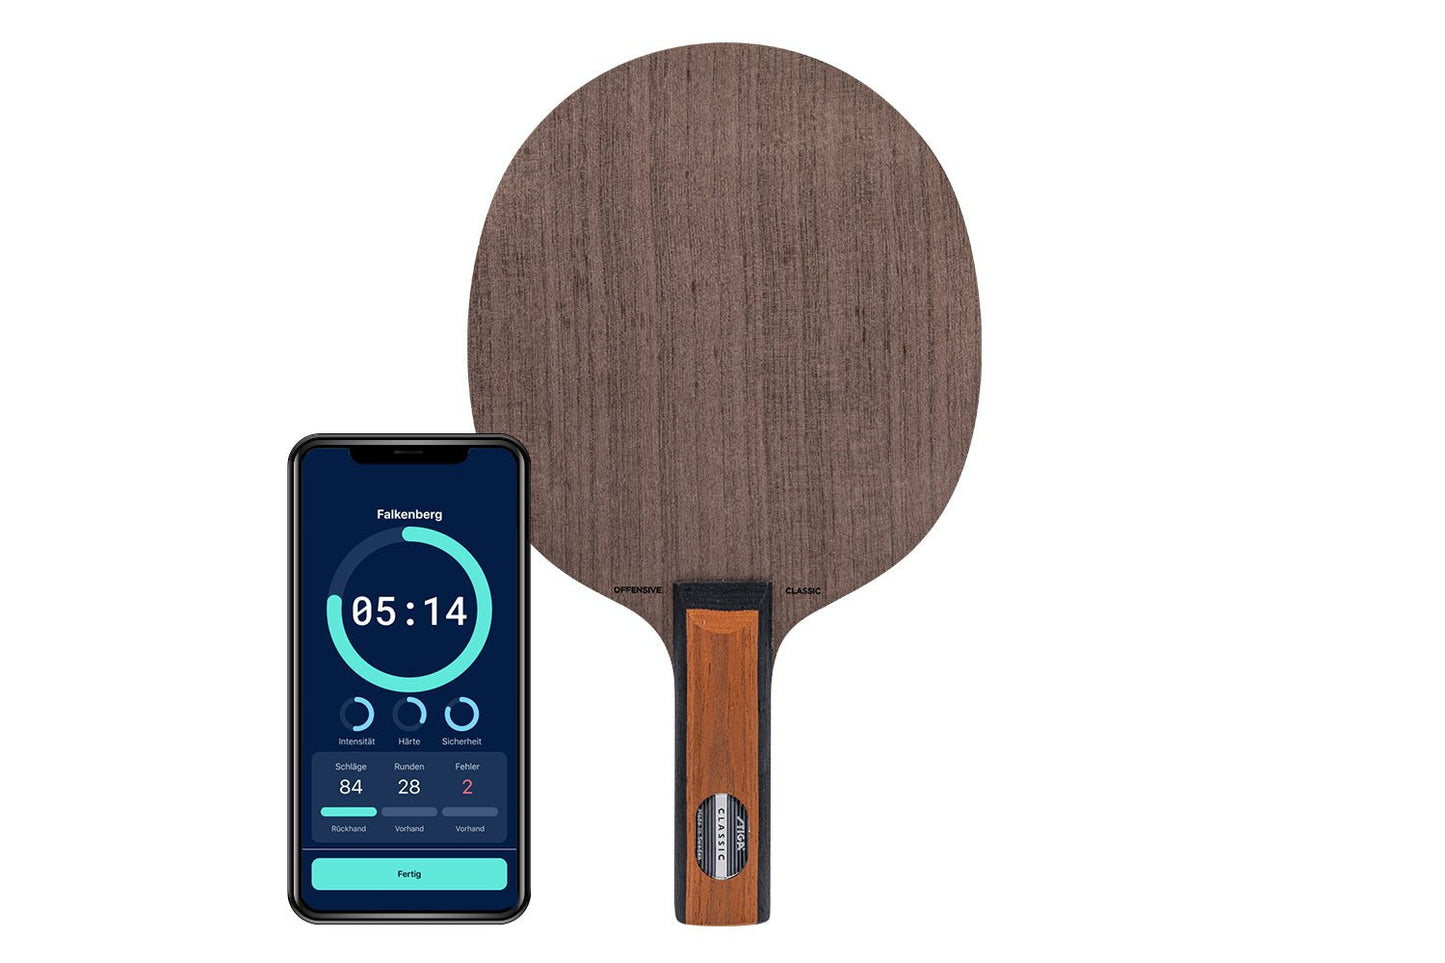 Stiga Offensive Classic Tischtennisschläger mit geradem Griff und Smartphone zeigt Daten des Schlägers vor weißem Hintergrund